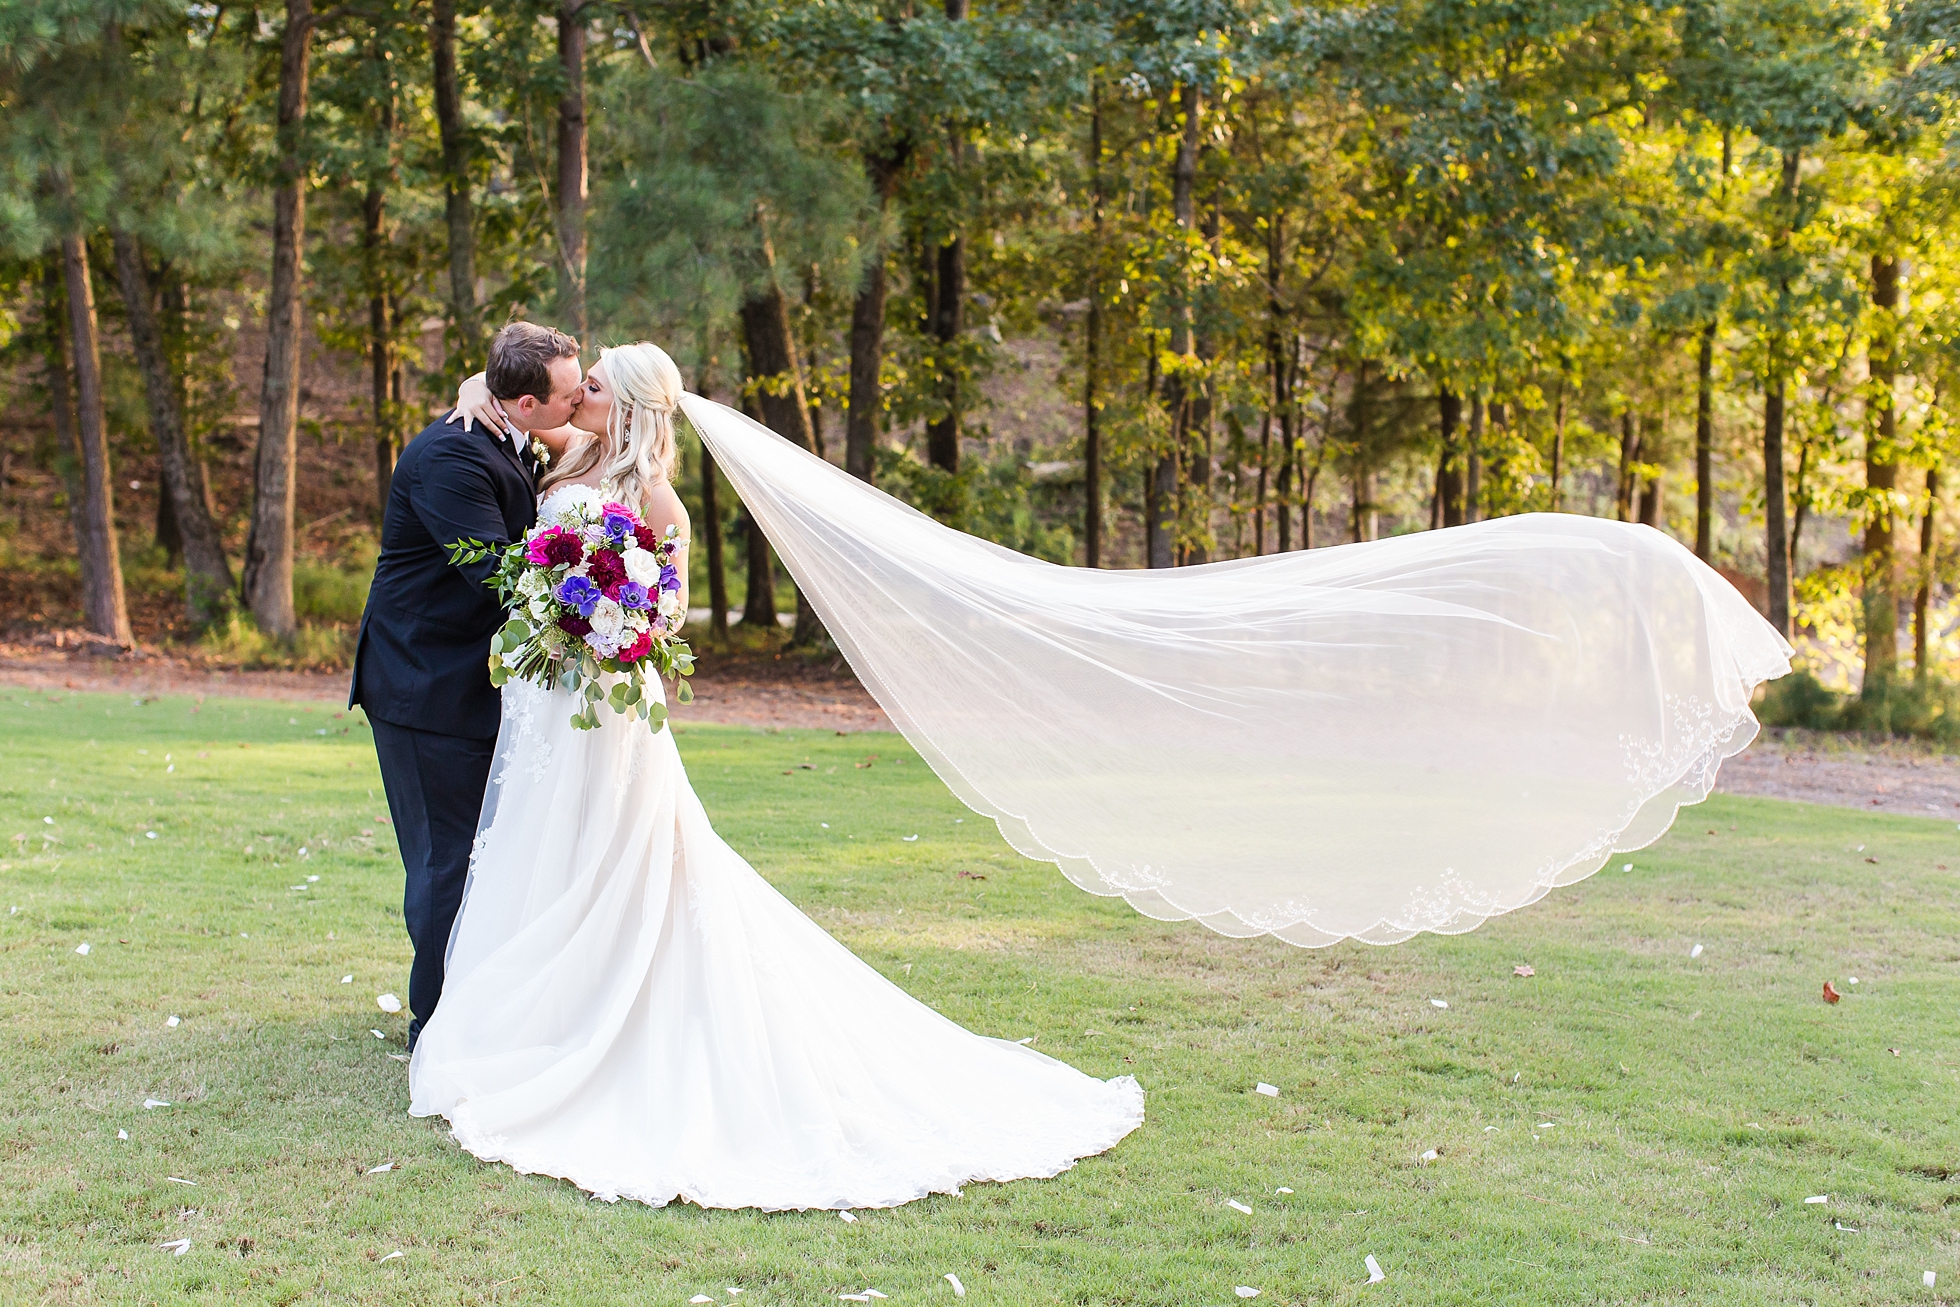 veil blowing wedding bride groom romantic